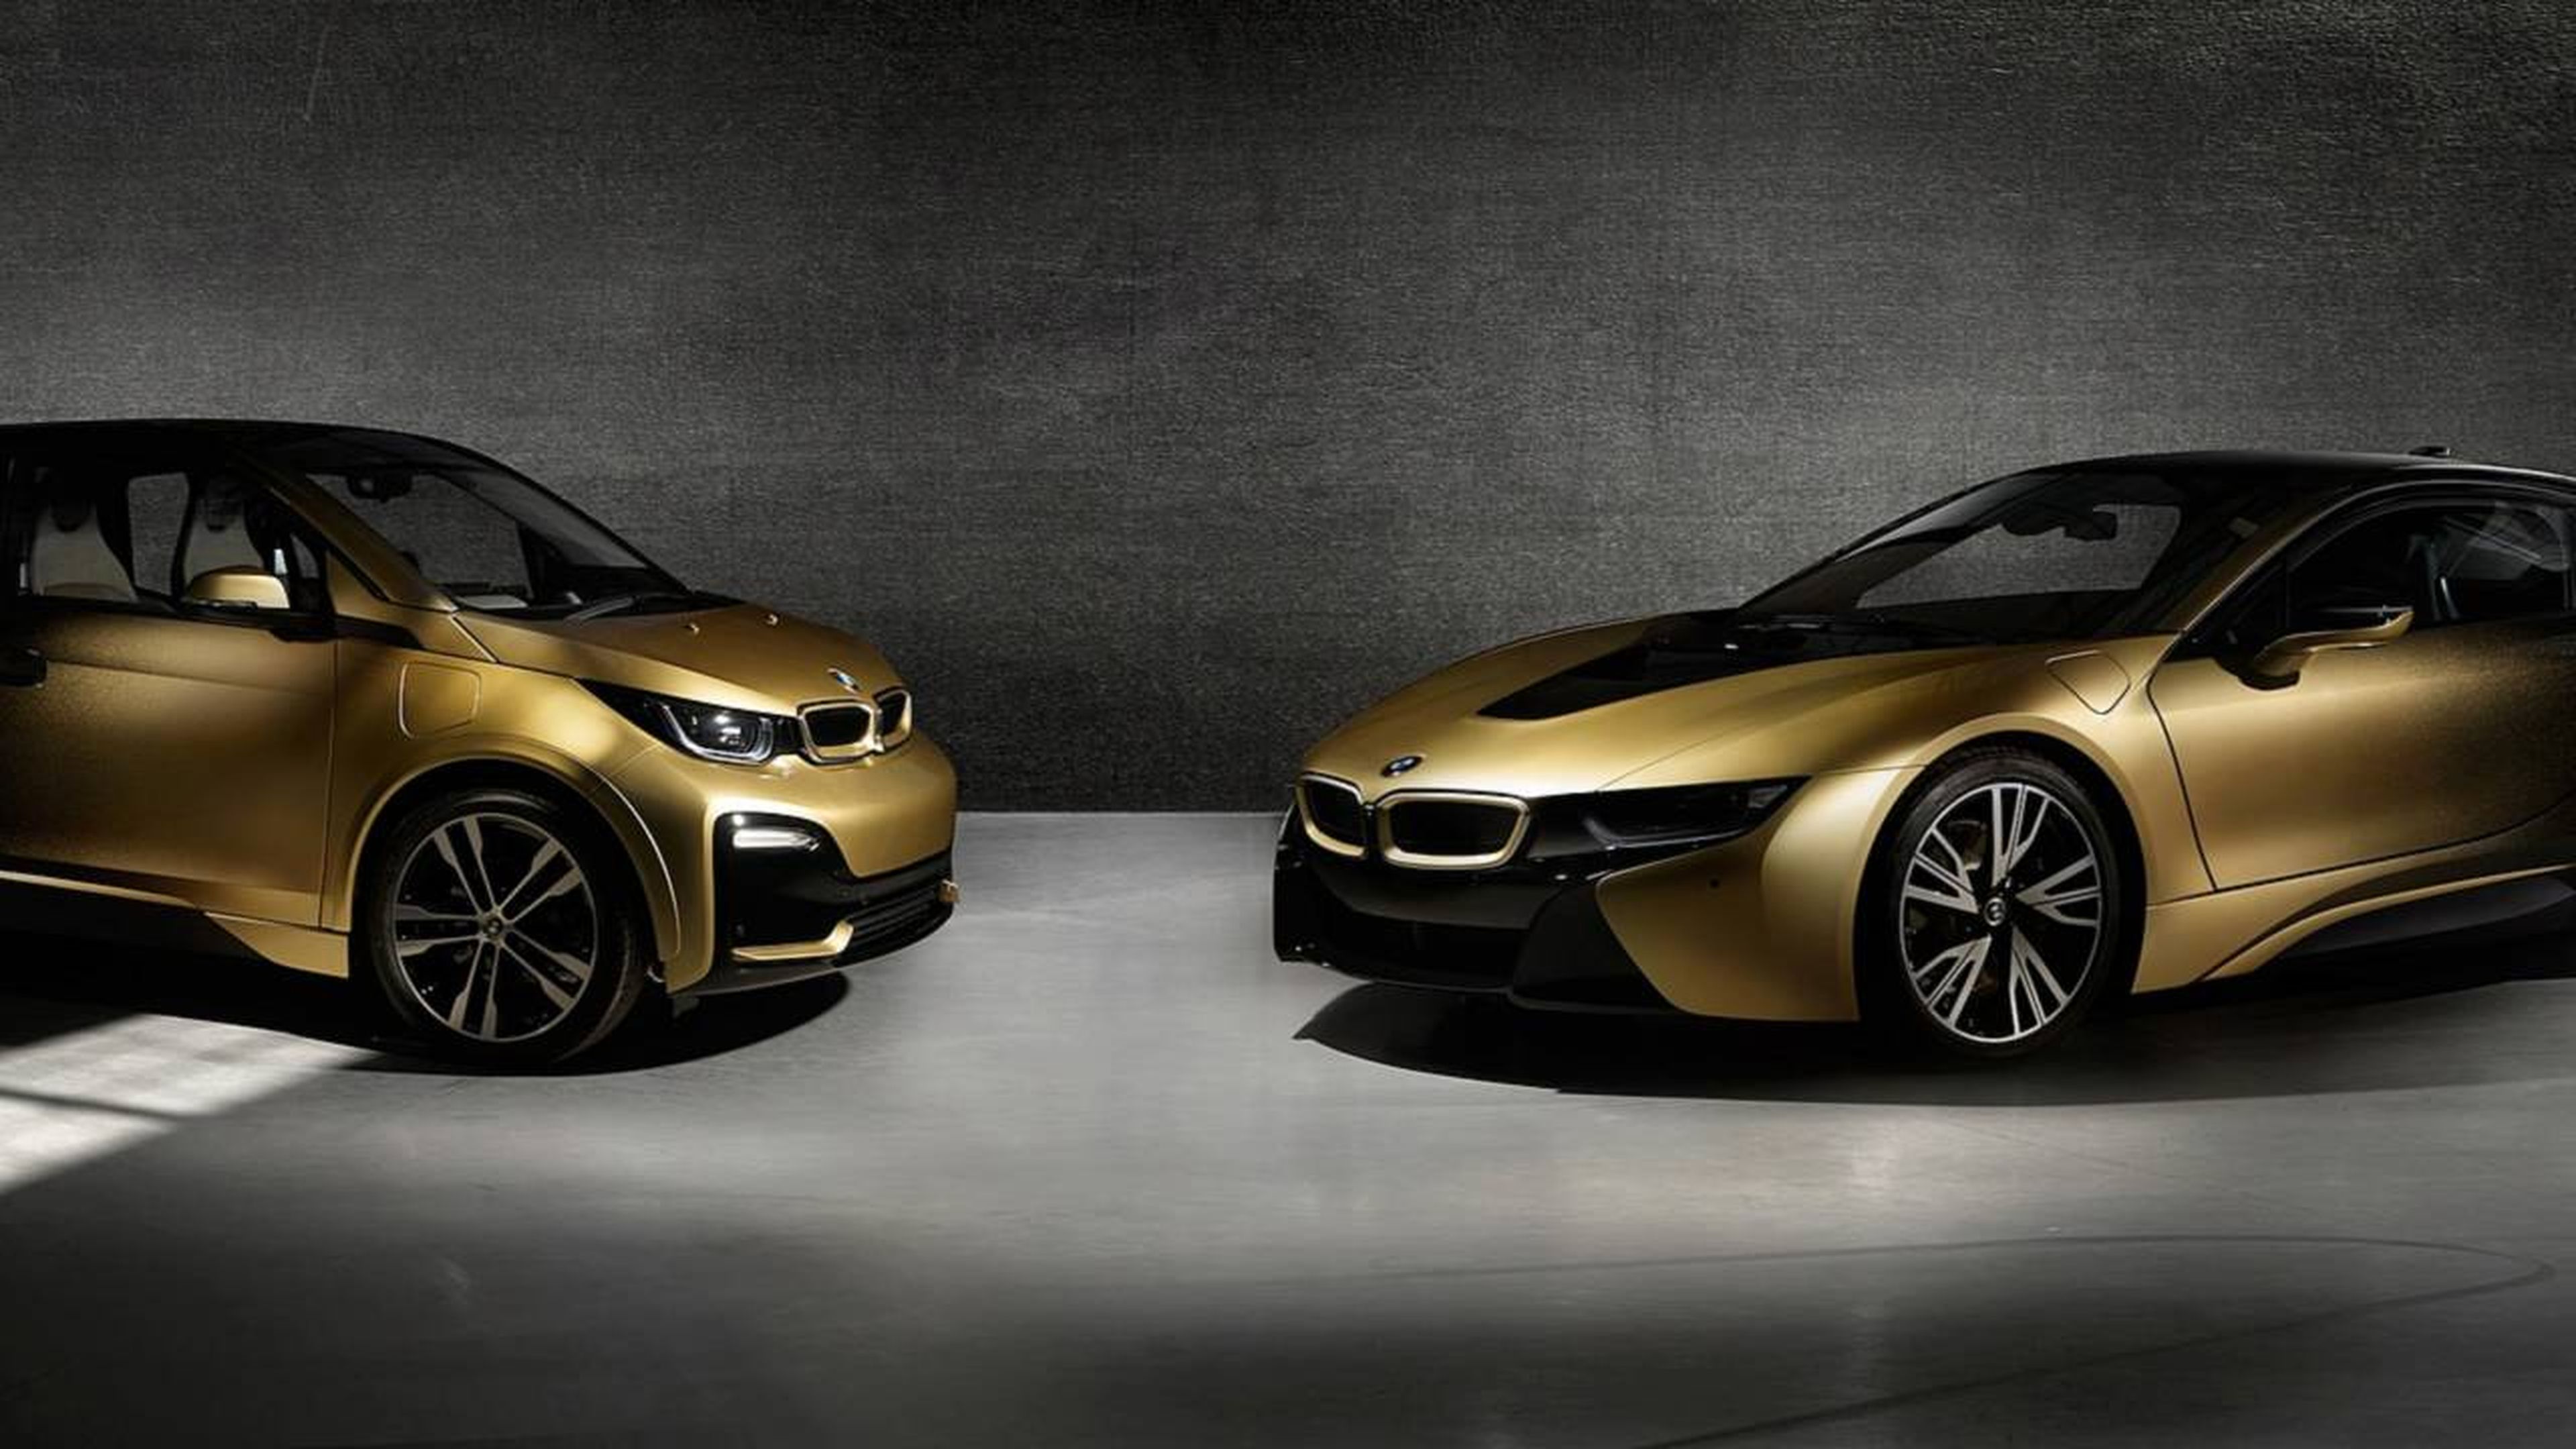 BMW i3 y el BMW i8 Starlight Edition